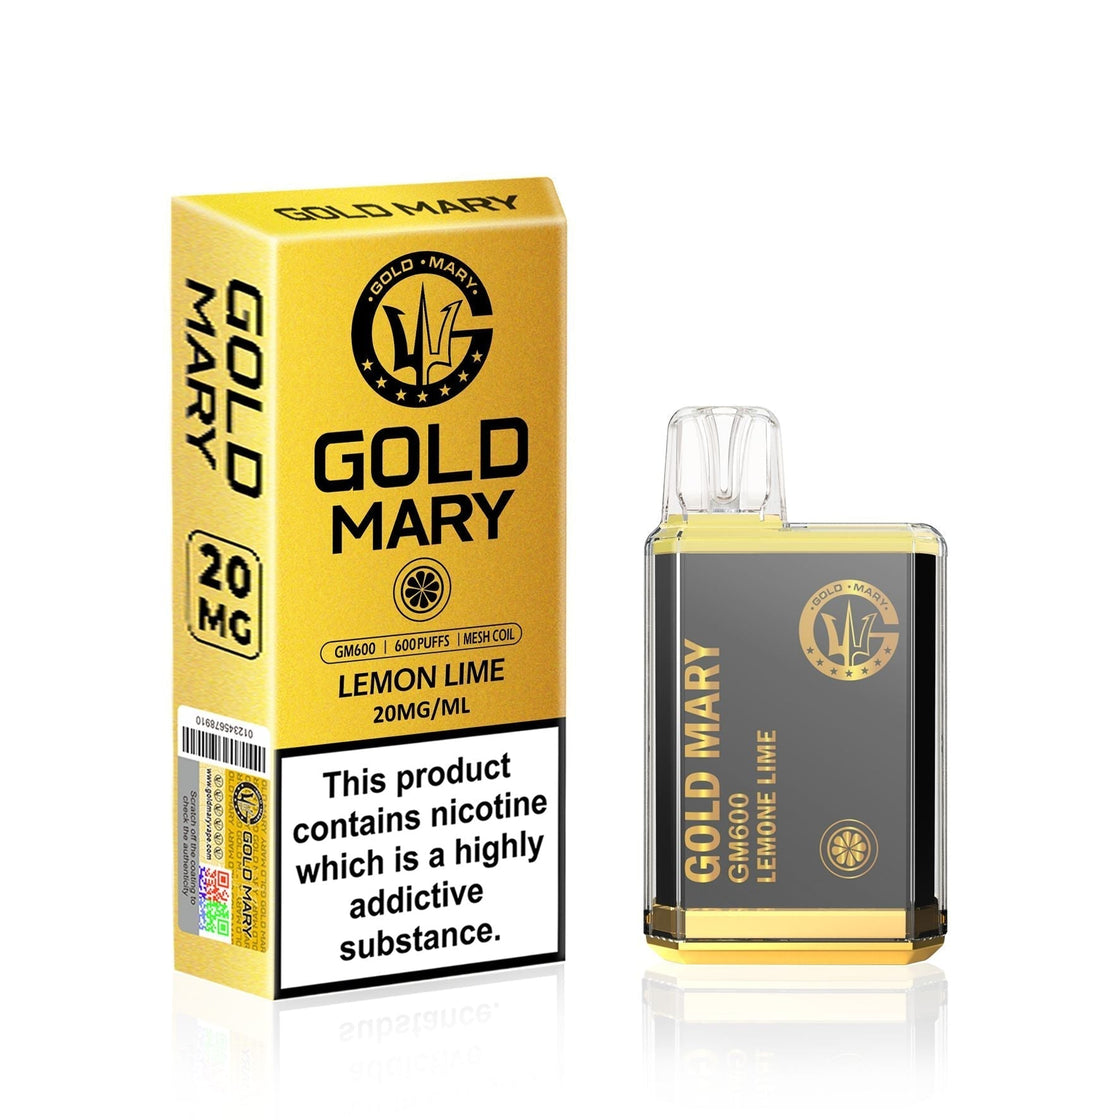 Gold Mary GM600 Disposable Vape Puff Bar Box of 10 - Lemon Lime -Vapeuksupplier